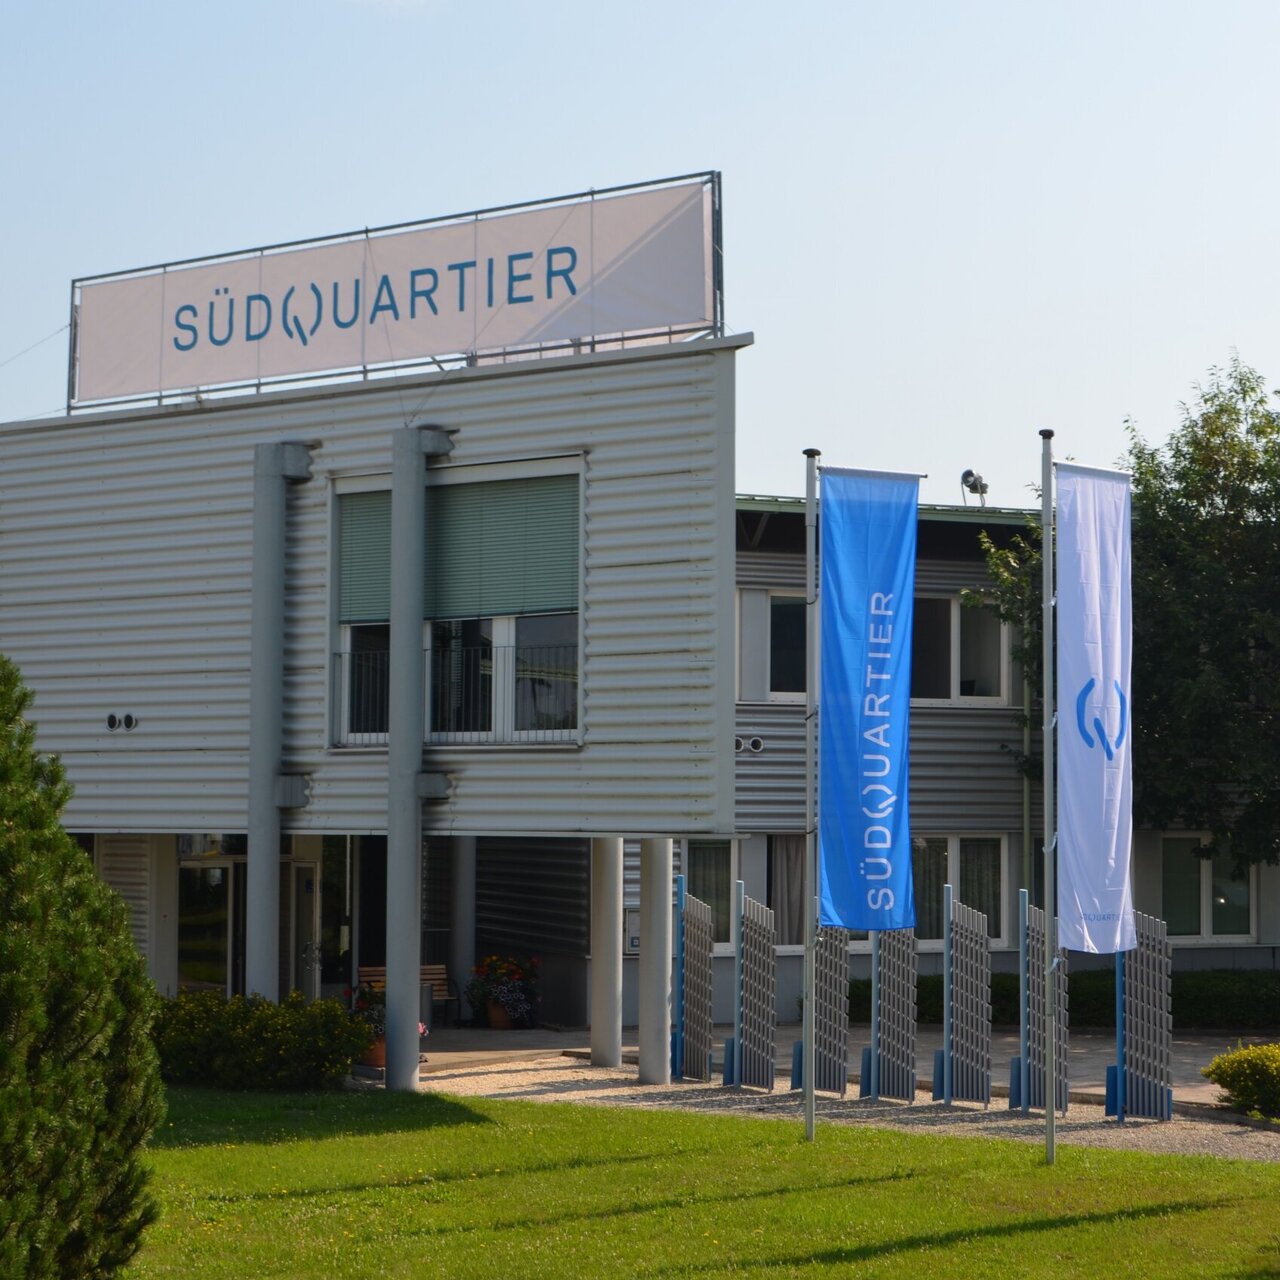 Außenansucht des Standorts "Das SüdQuartier" mit blauen Fahnen mit dem Schriftzug "Das SüdQuartier" vor dem Eingang